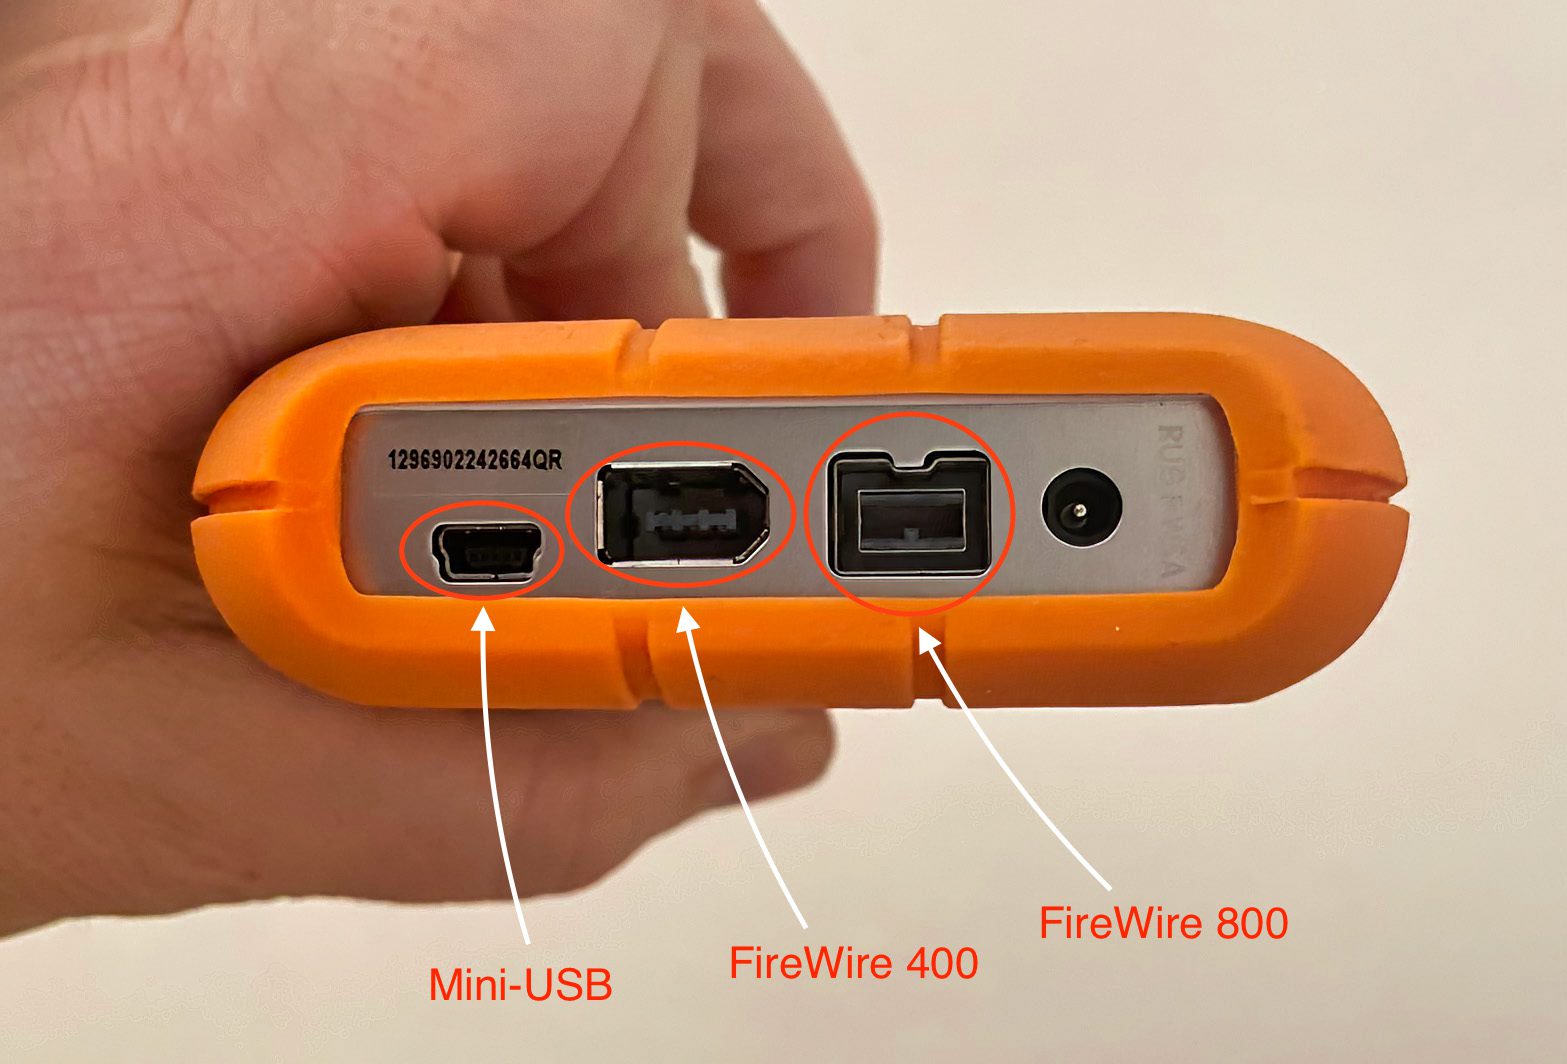 Hier die Anschlüsse der LaCie-Festplatte: links Mini-USB, dann FireWire 400 und rechts FireWire 800 (Foto: Andreas Rentsch).